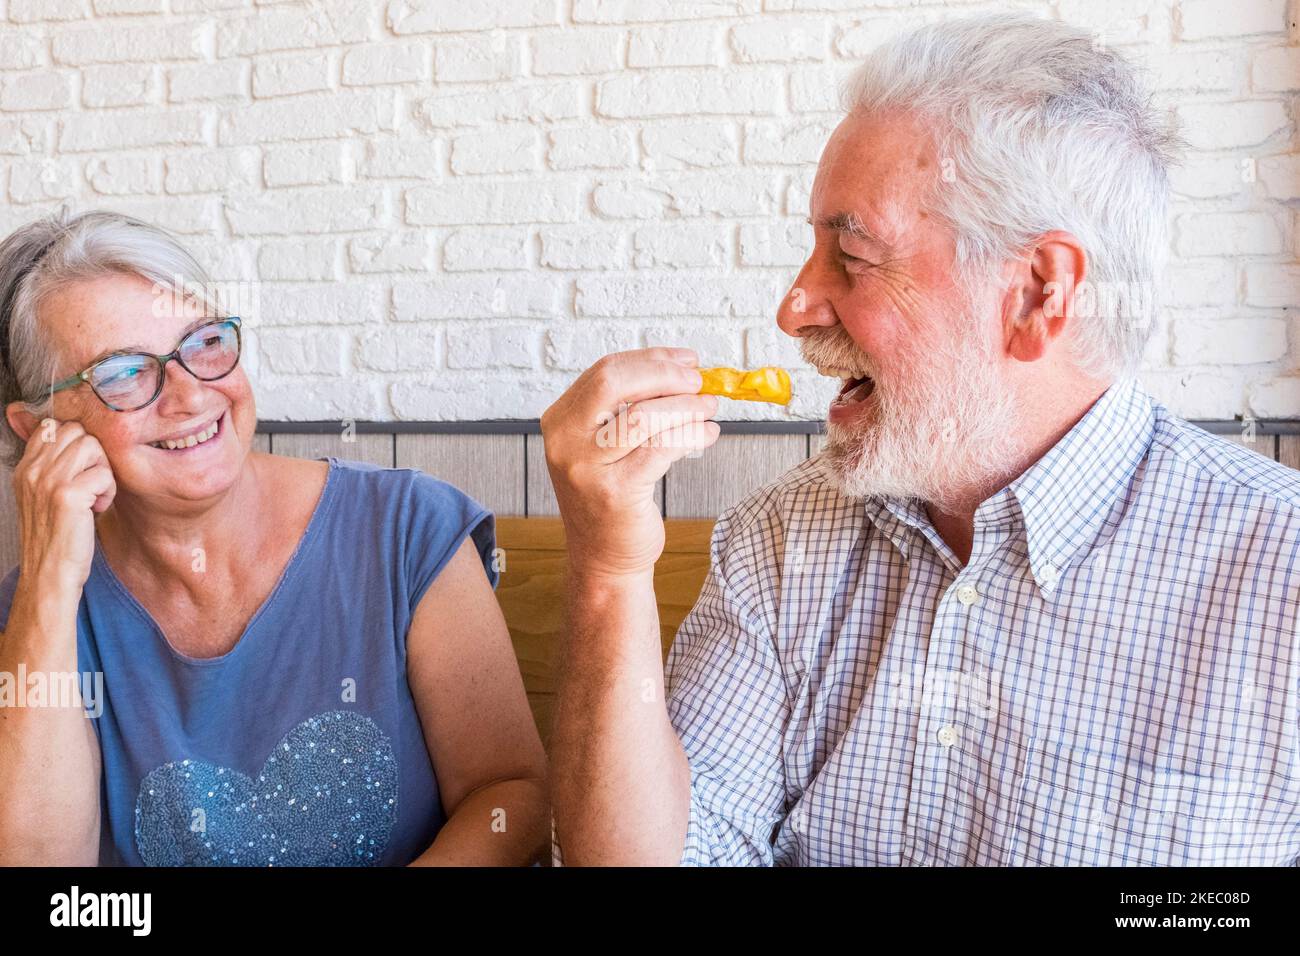 Paar und Porträt von zwei glücklich reifen Menschen Senior Essen In einem Fast Food oder Restaurant zusammen lächeln und haben Spaß Lachen - glücklich und niedlich Lebensstil und Konzept Zwei Rentner zu Hause Stockfoto